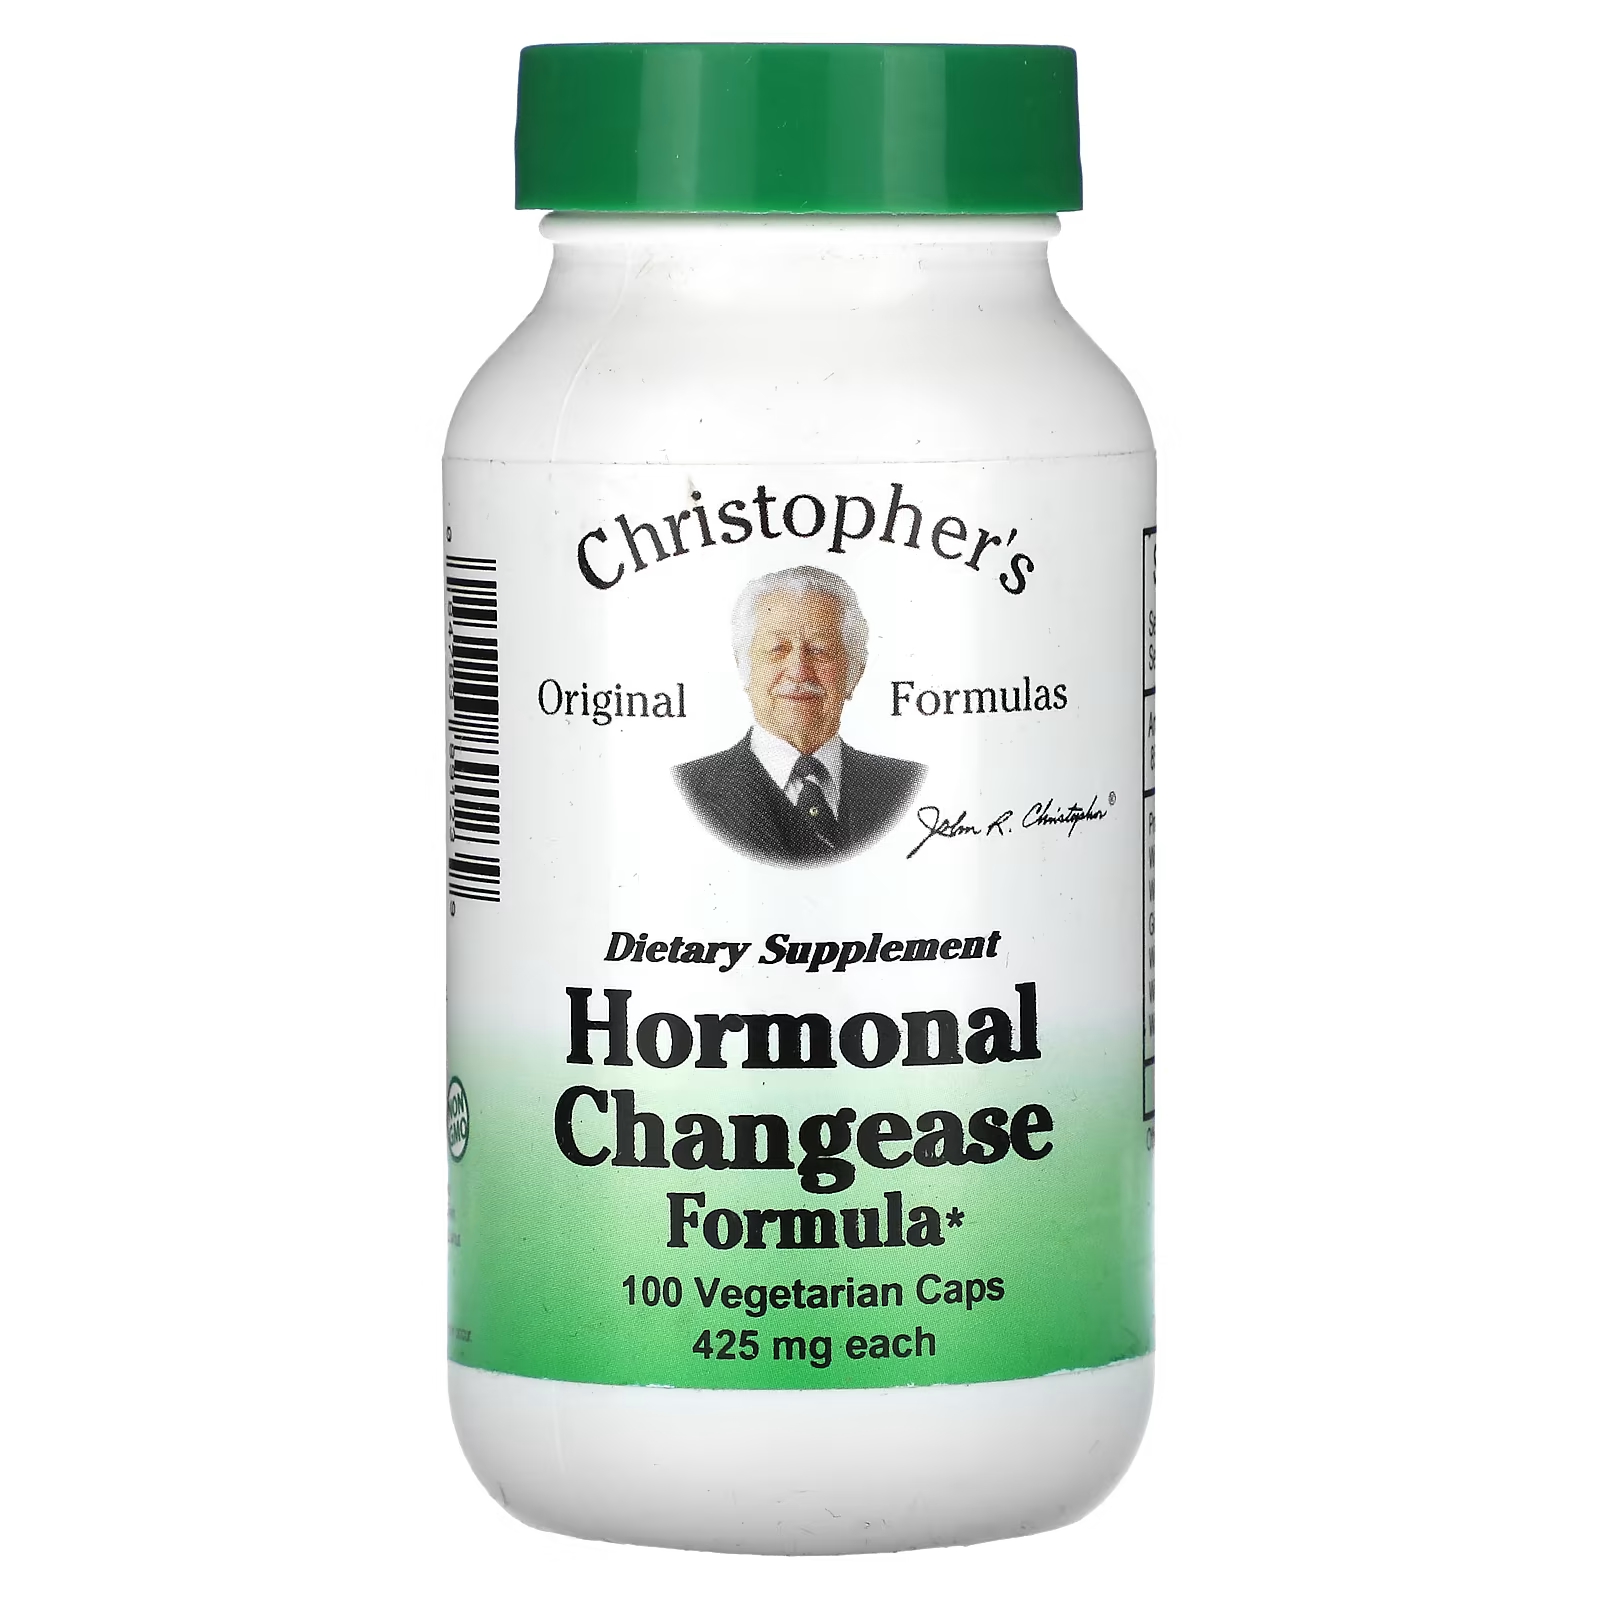 Гормональная формула изменения Christopher's Original Formulas 425 мг, 100 капсул christopher s original formulas растительная формула кальция 100 овощных капсул